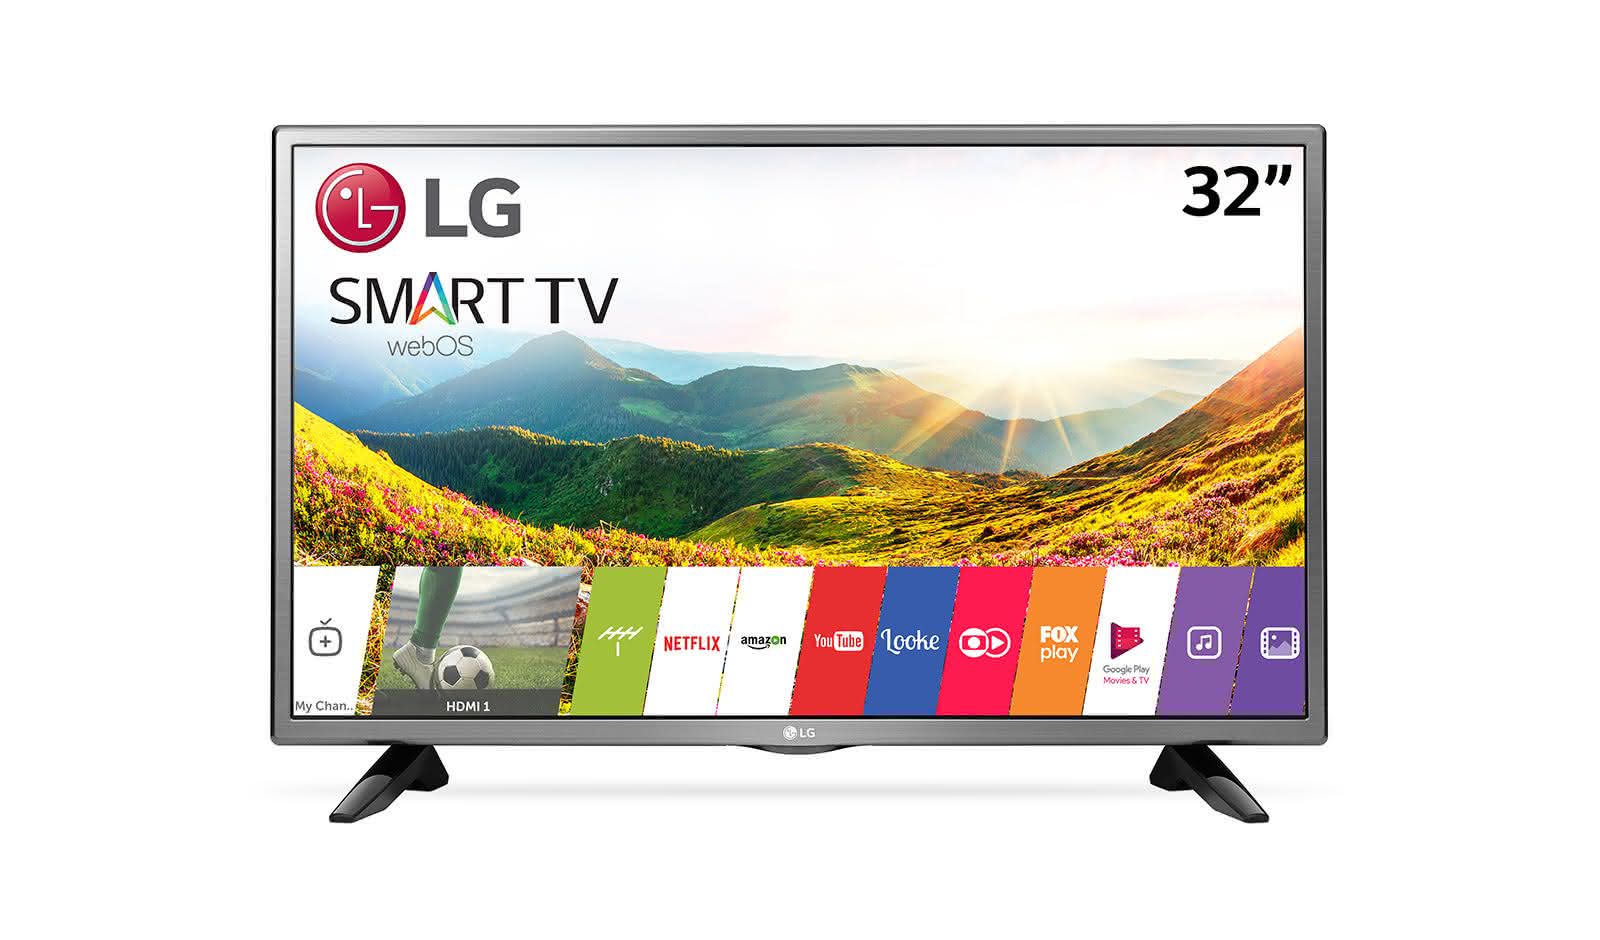 Телевизор lg smart tv. LG Smart TV lh570u. Телевизор LG 32 дюйма смарт. Телевизор LG Smart TV 32lh570u. Телевизор LG 32lm6300.